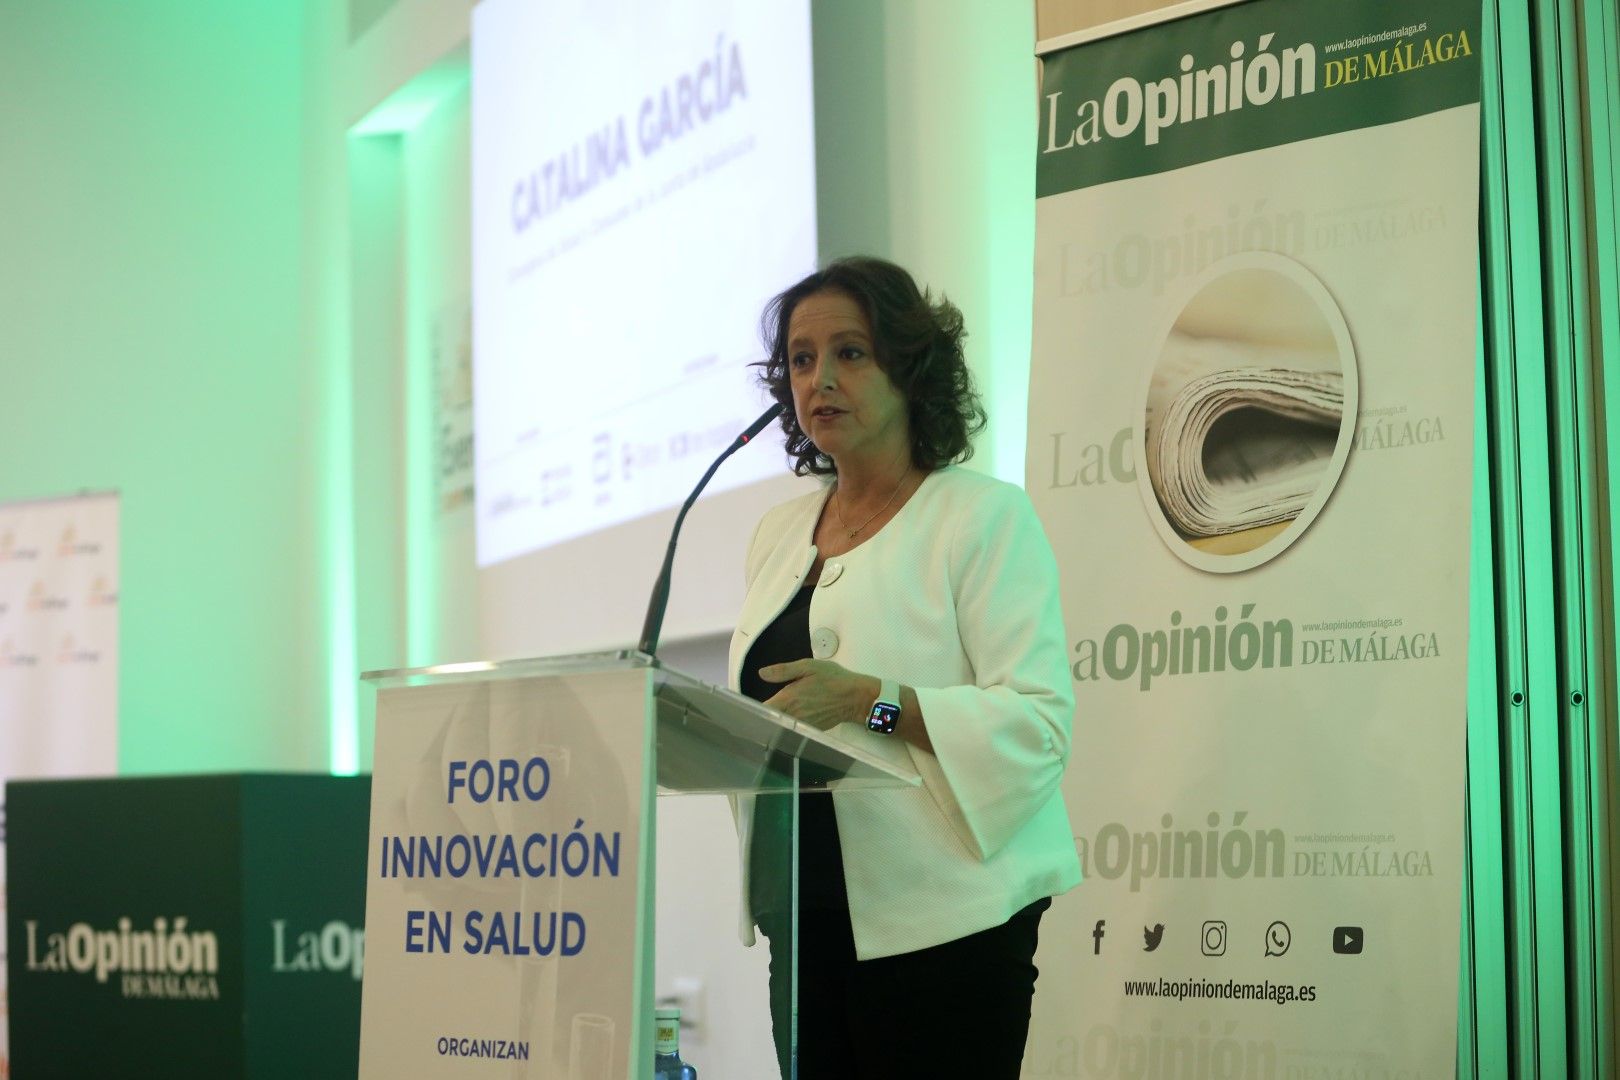 Foro de Innovación en Salud con la consejera de Sanidad, Catalina García